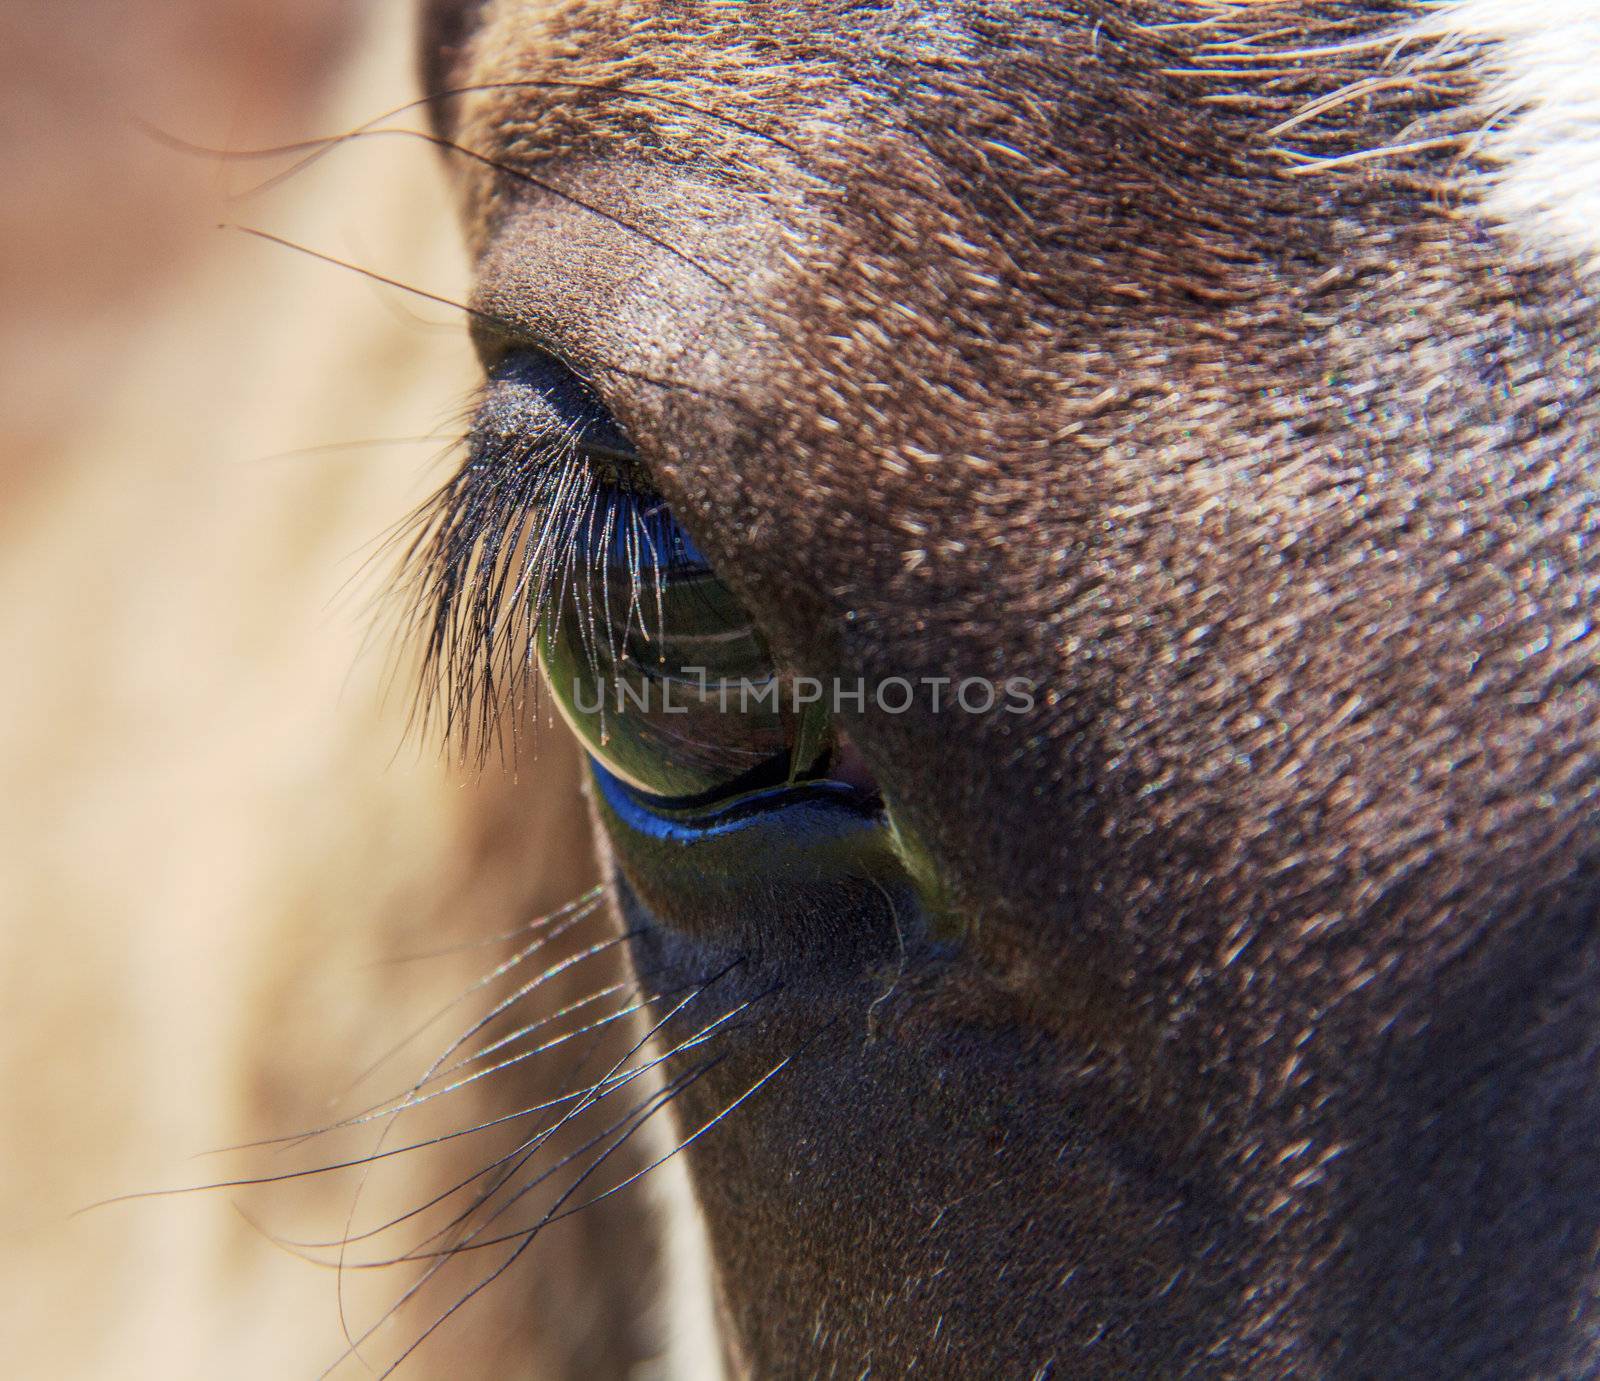 horse eye with eyelashes by SkyLynx